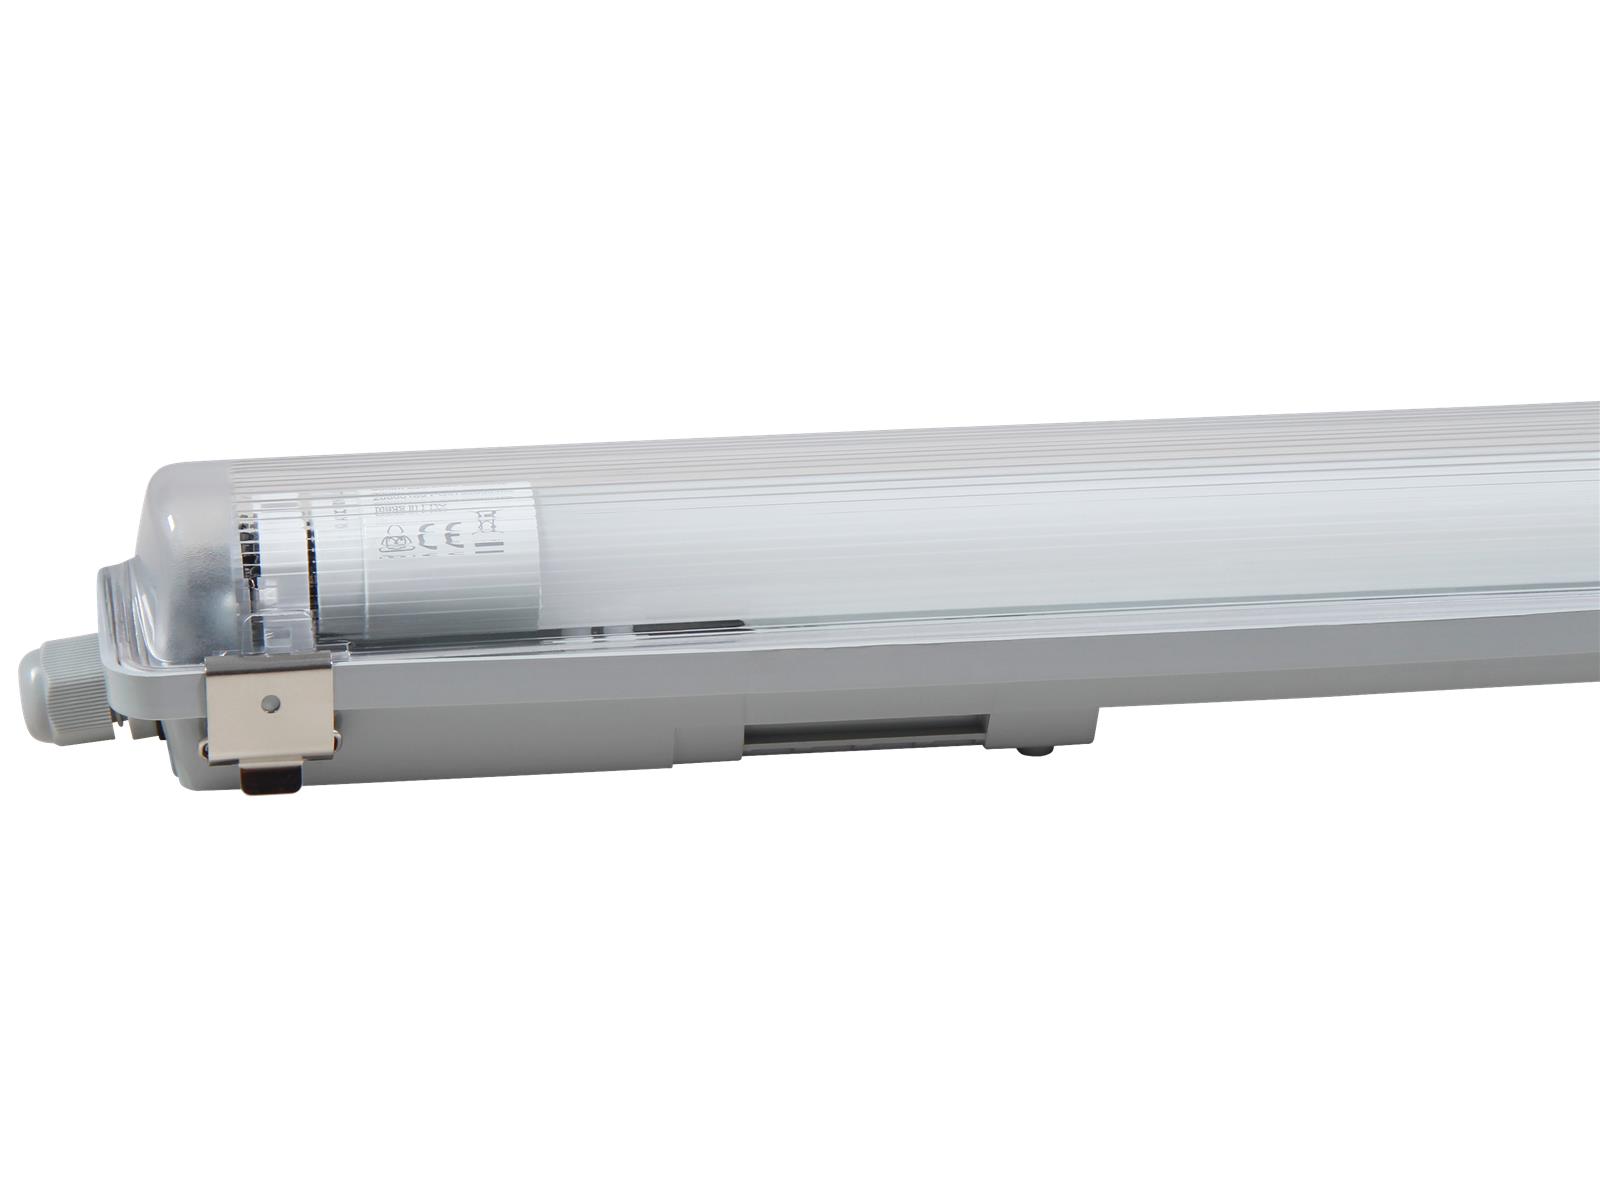 LED-Deckenleuchte für Feuchträume, IP65, 1x 850lm, 4000K, 60cm, neutralweiß